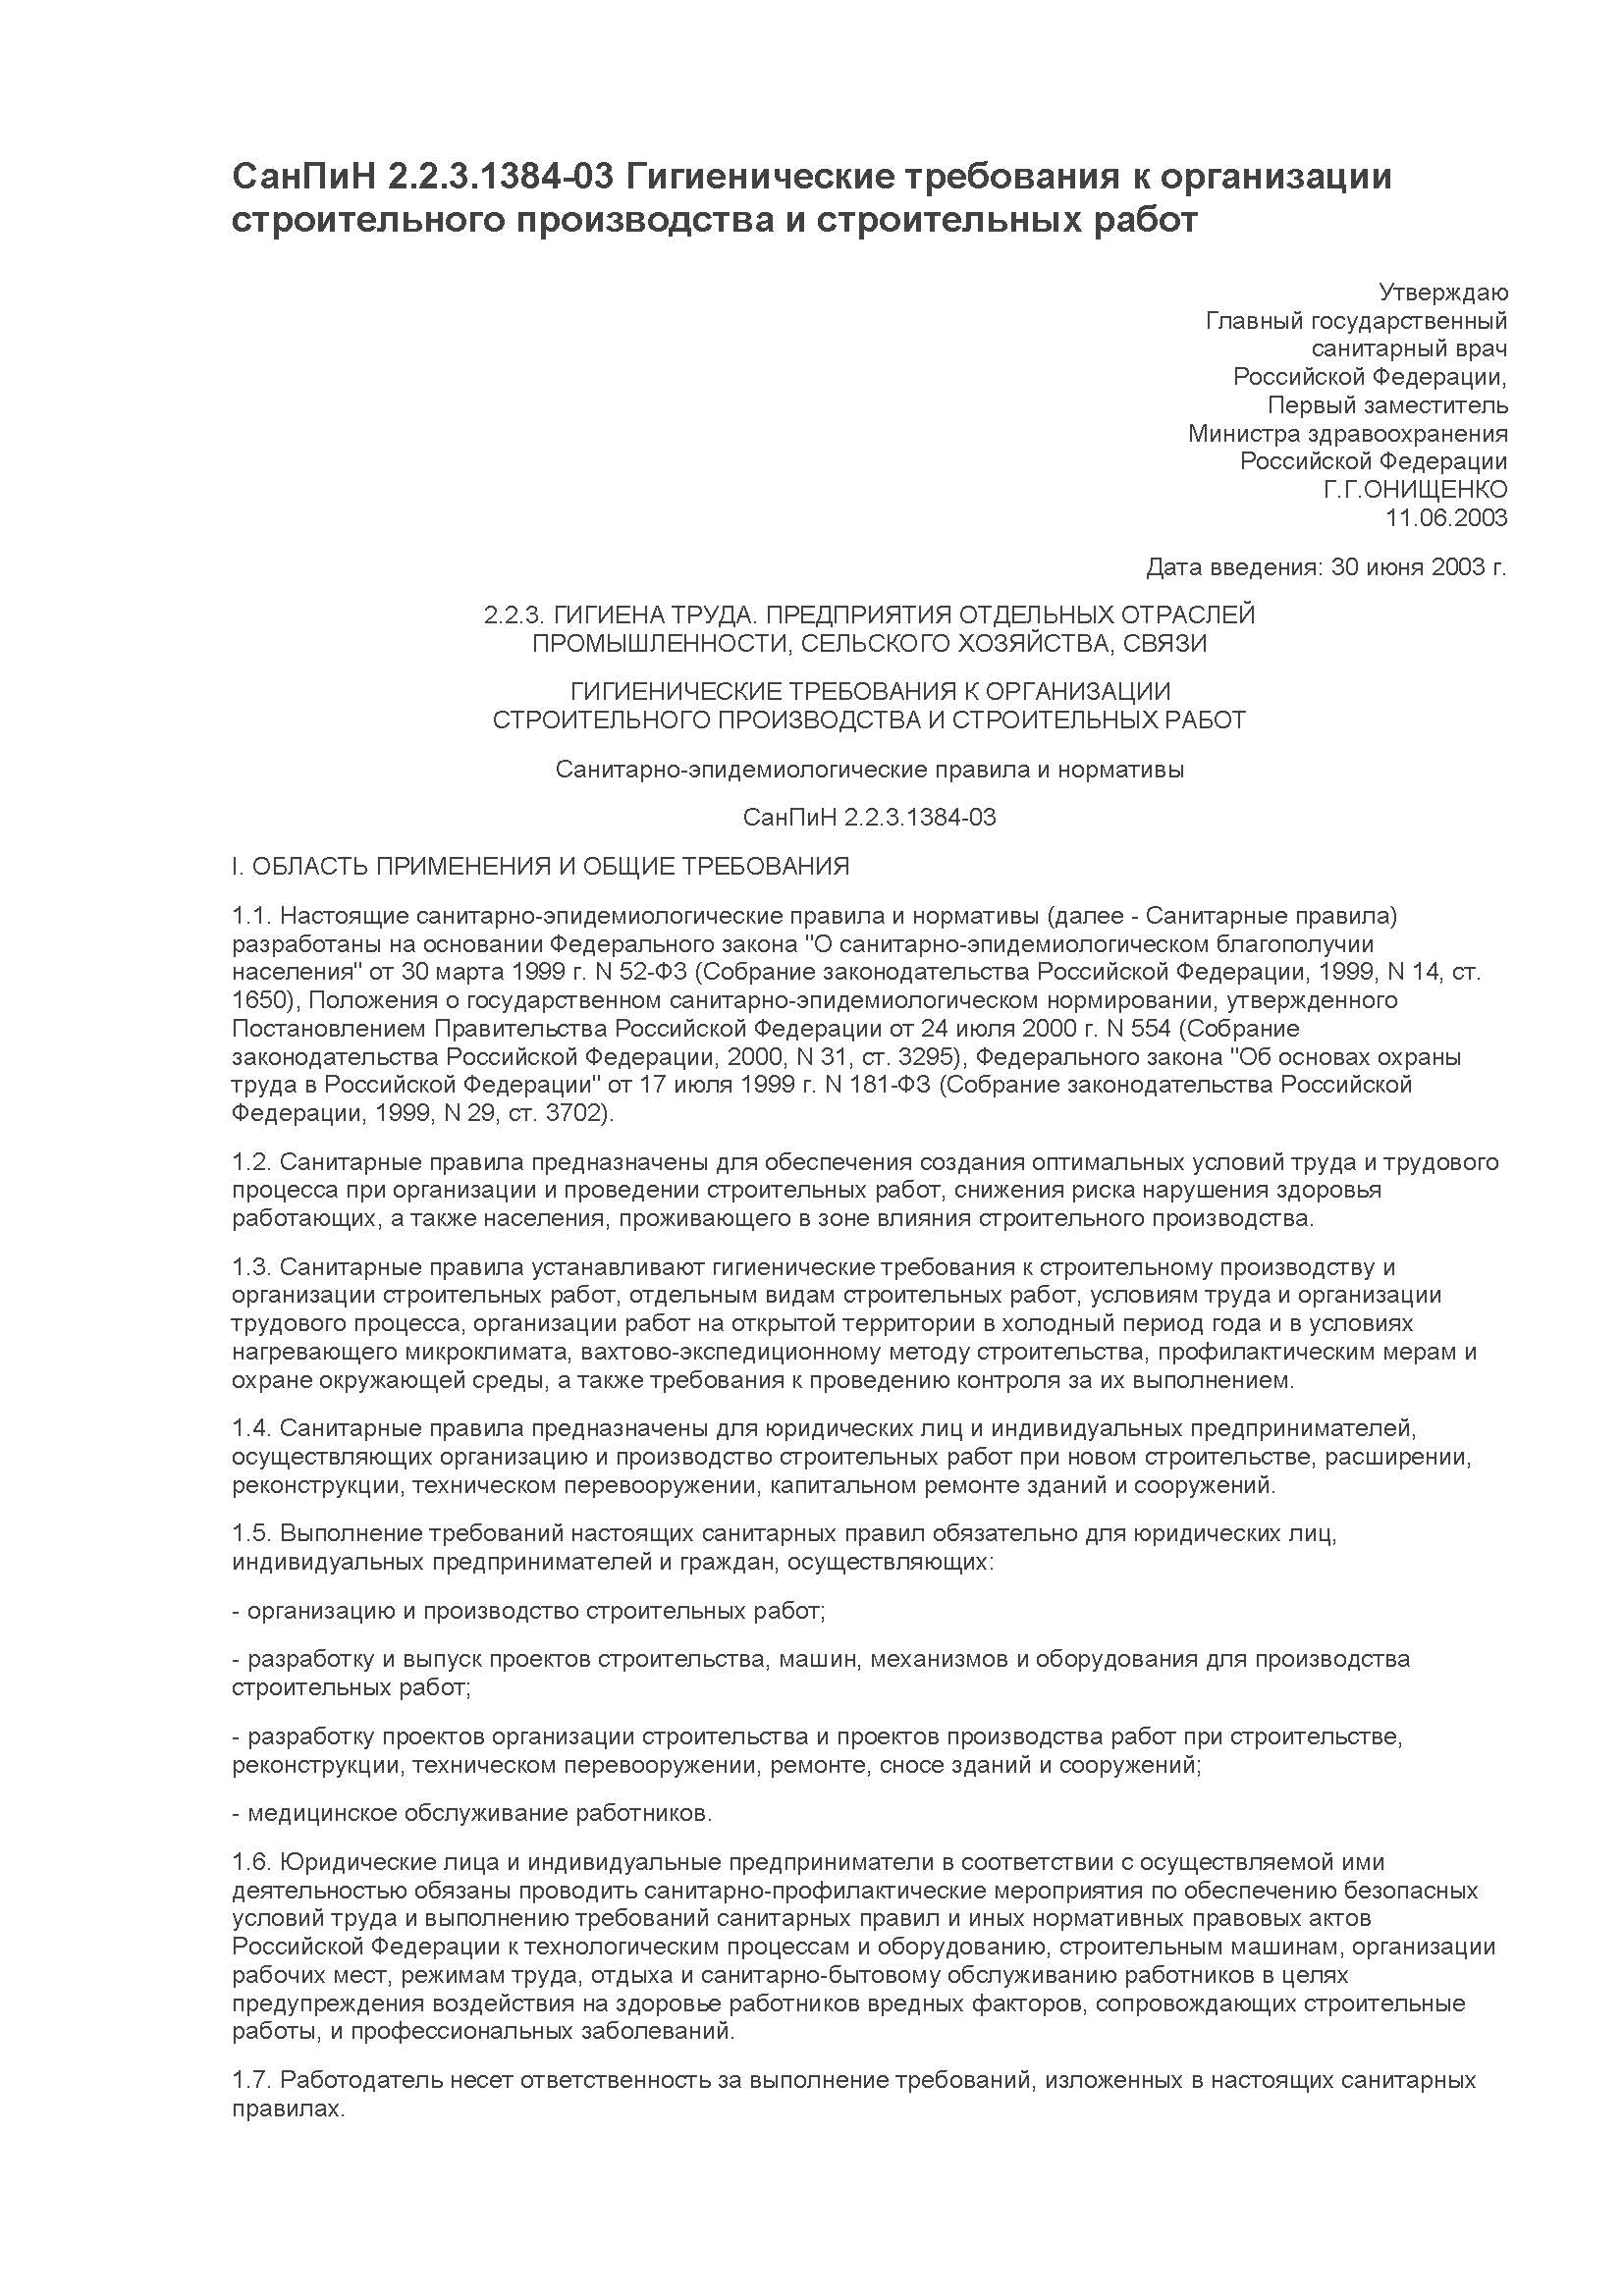 СанПиН 2.2.3.1384-03 с учетом изменений от 3 сентября 2010 года. Гигиенические требования к организации строительного производства и строительных работ